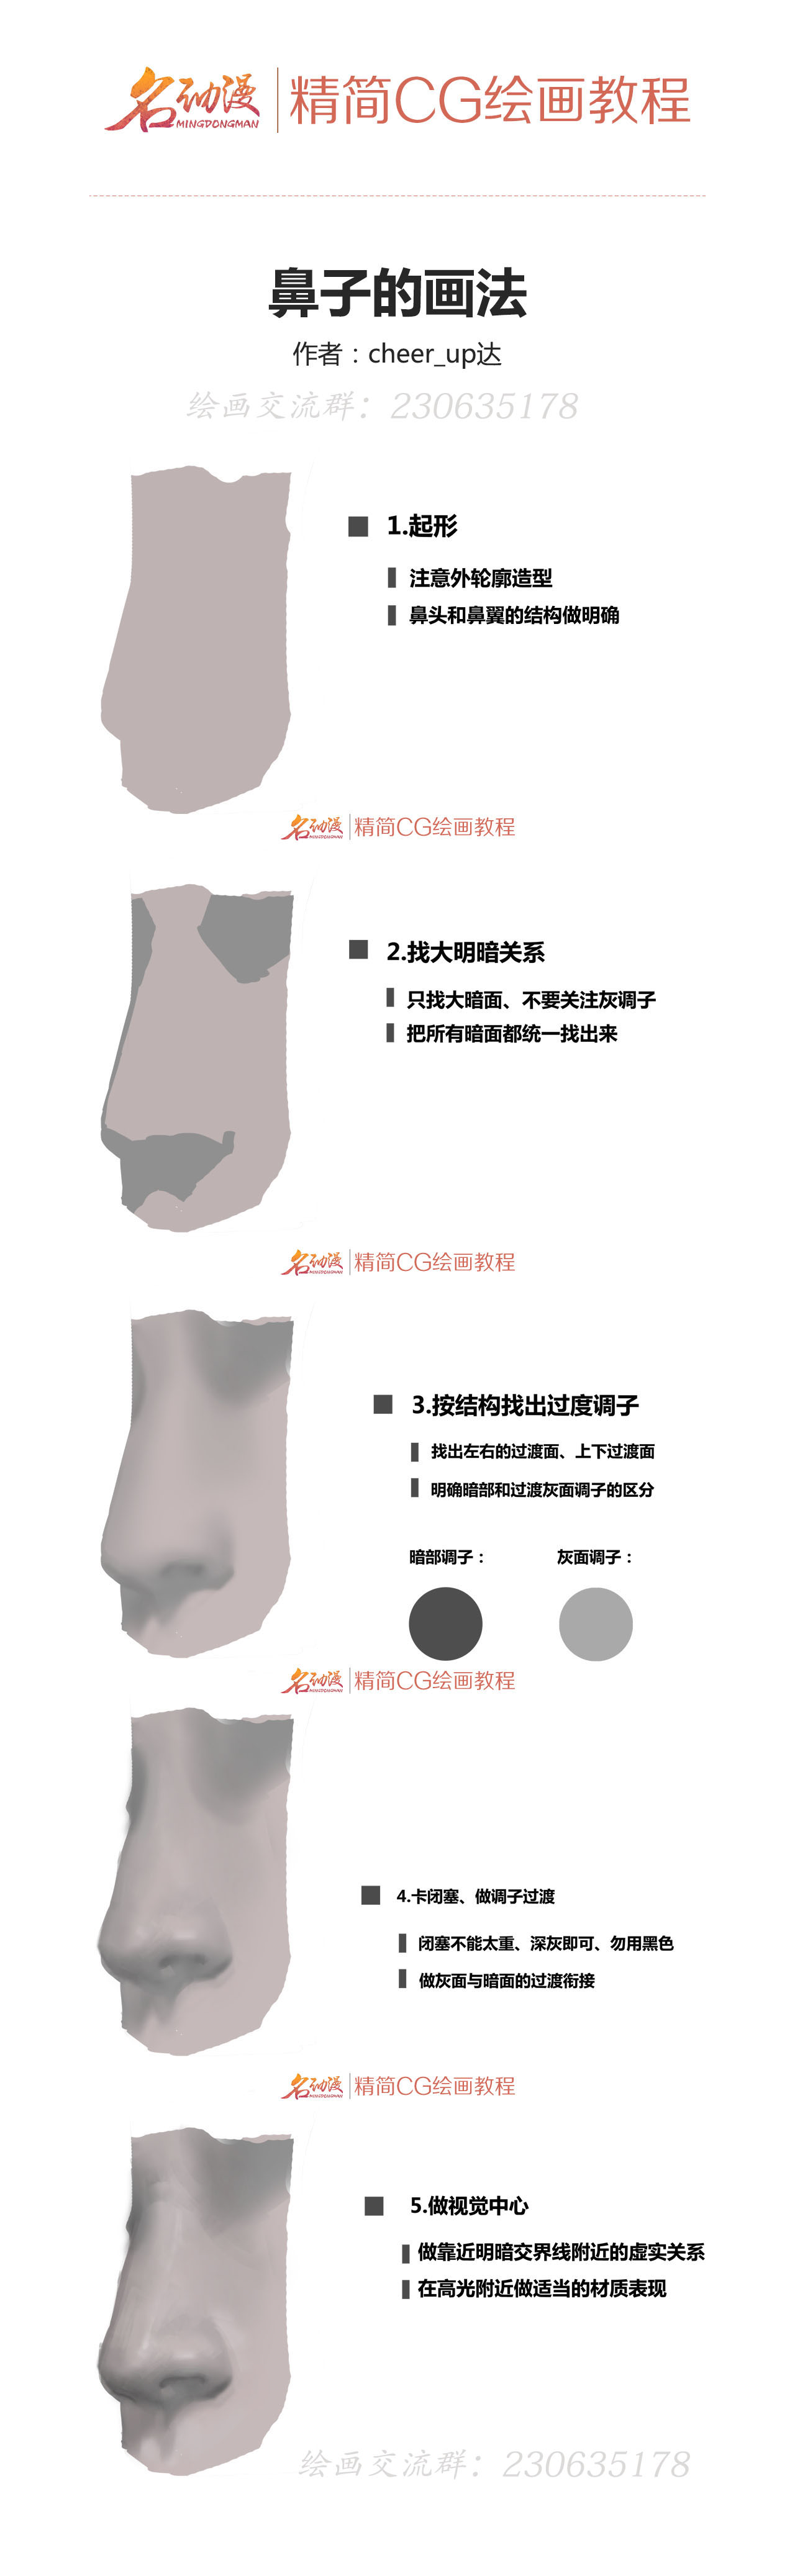 鼻子的画法水印.jpg